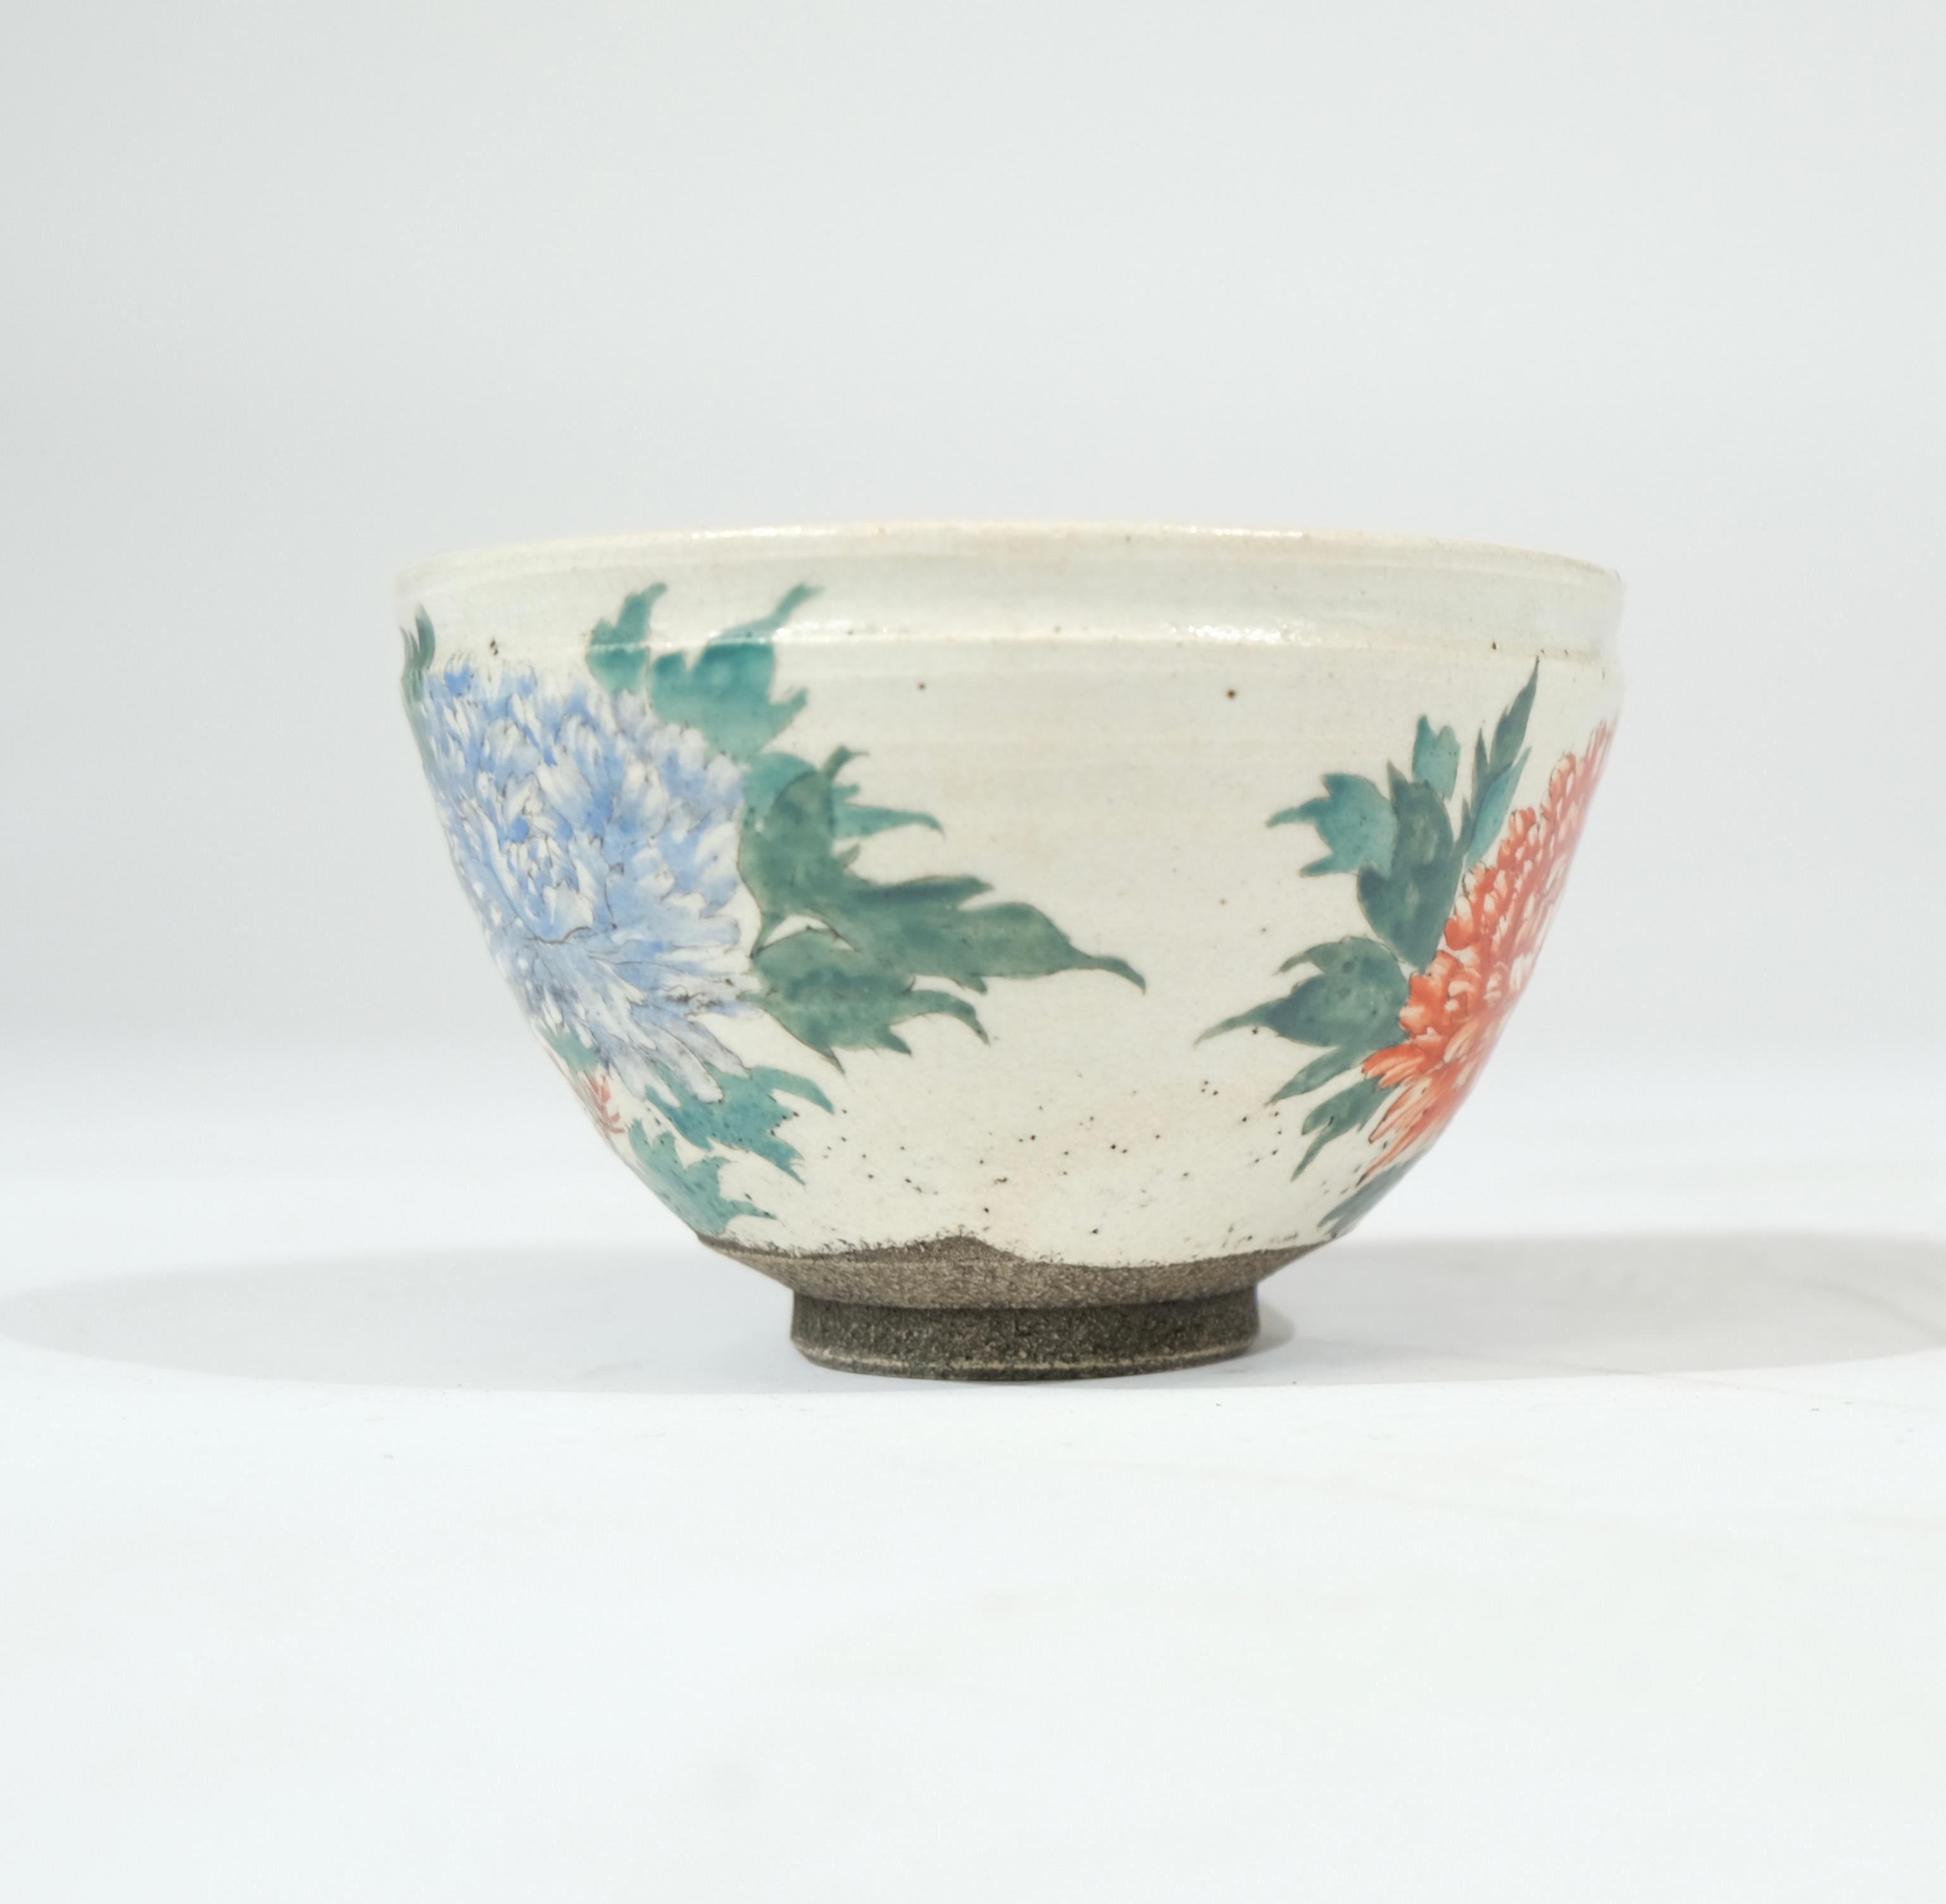 Japanische glasierte Teeschale aus dem späten 19. Jahrhundert mit gemaltem Blumendekor.